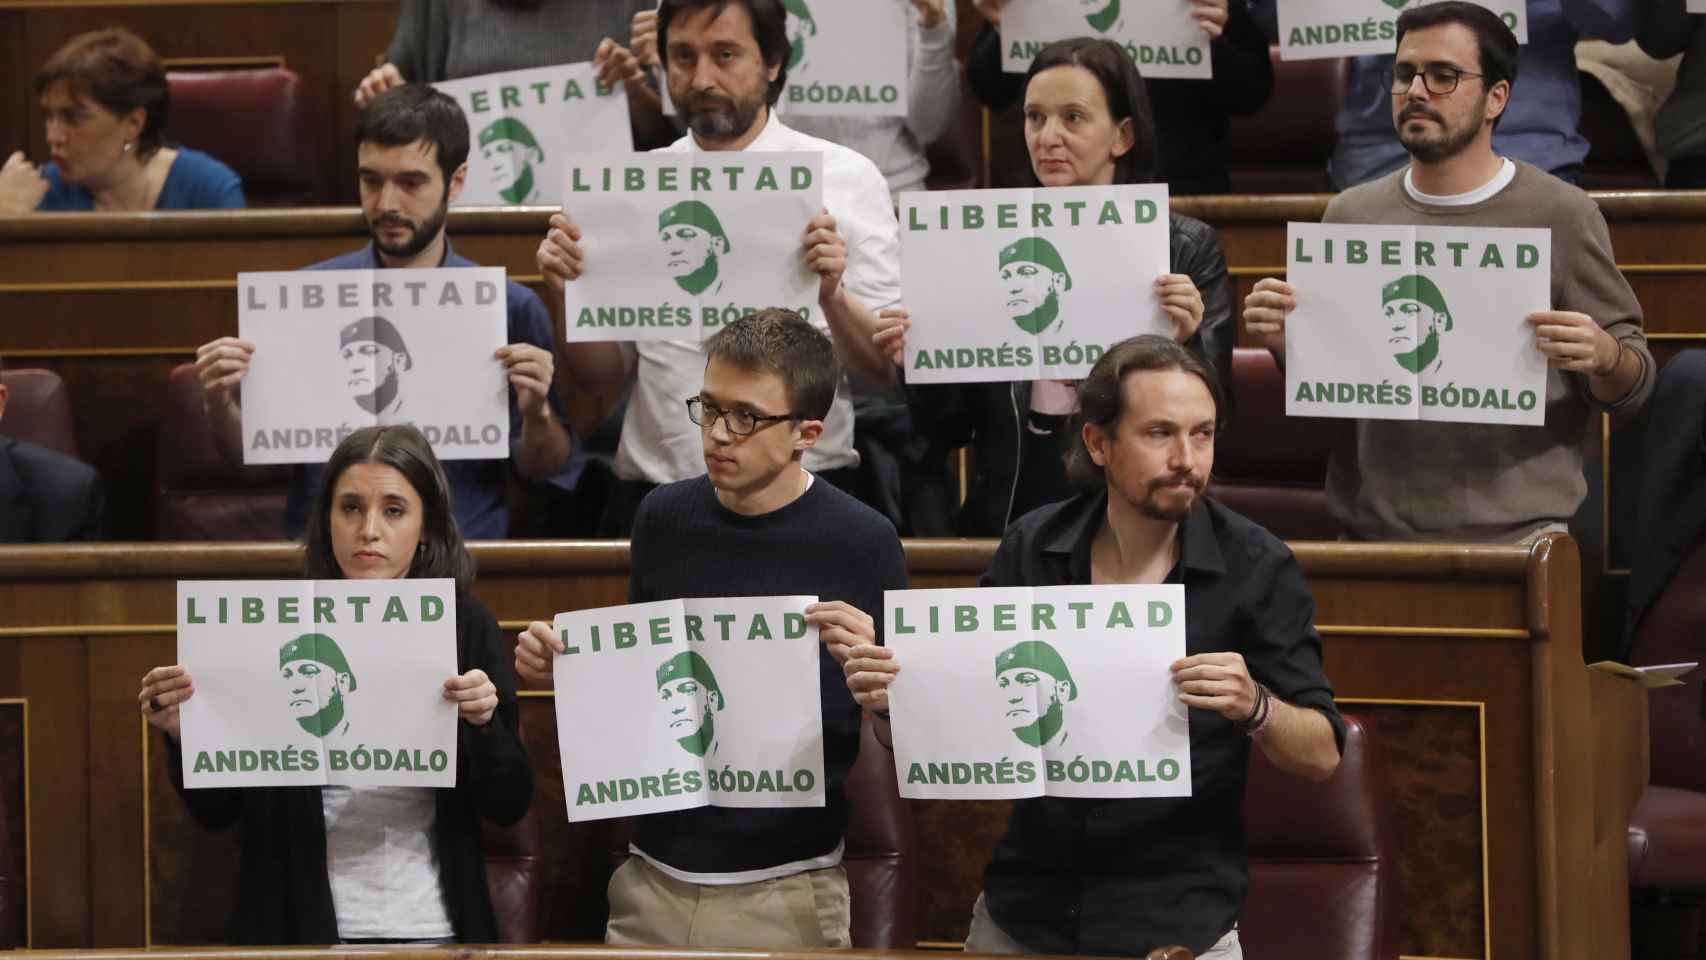 Los carteles exhibidos por los miembros de Podemos.